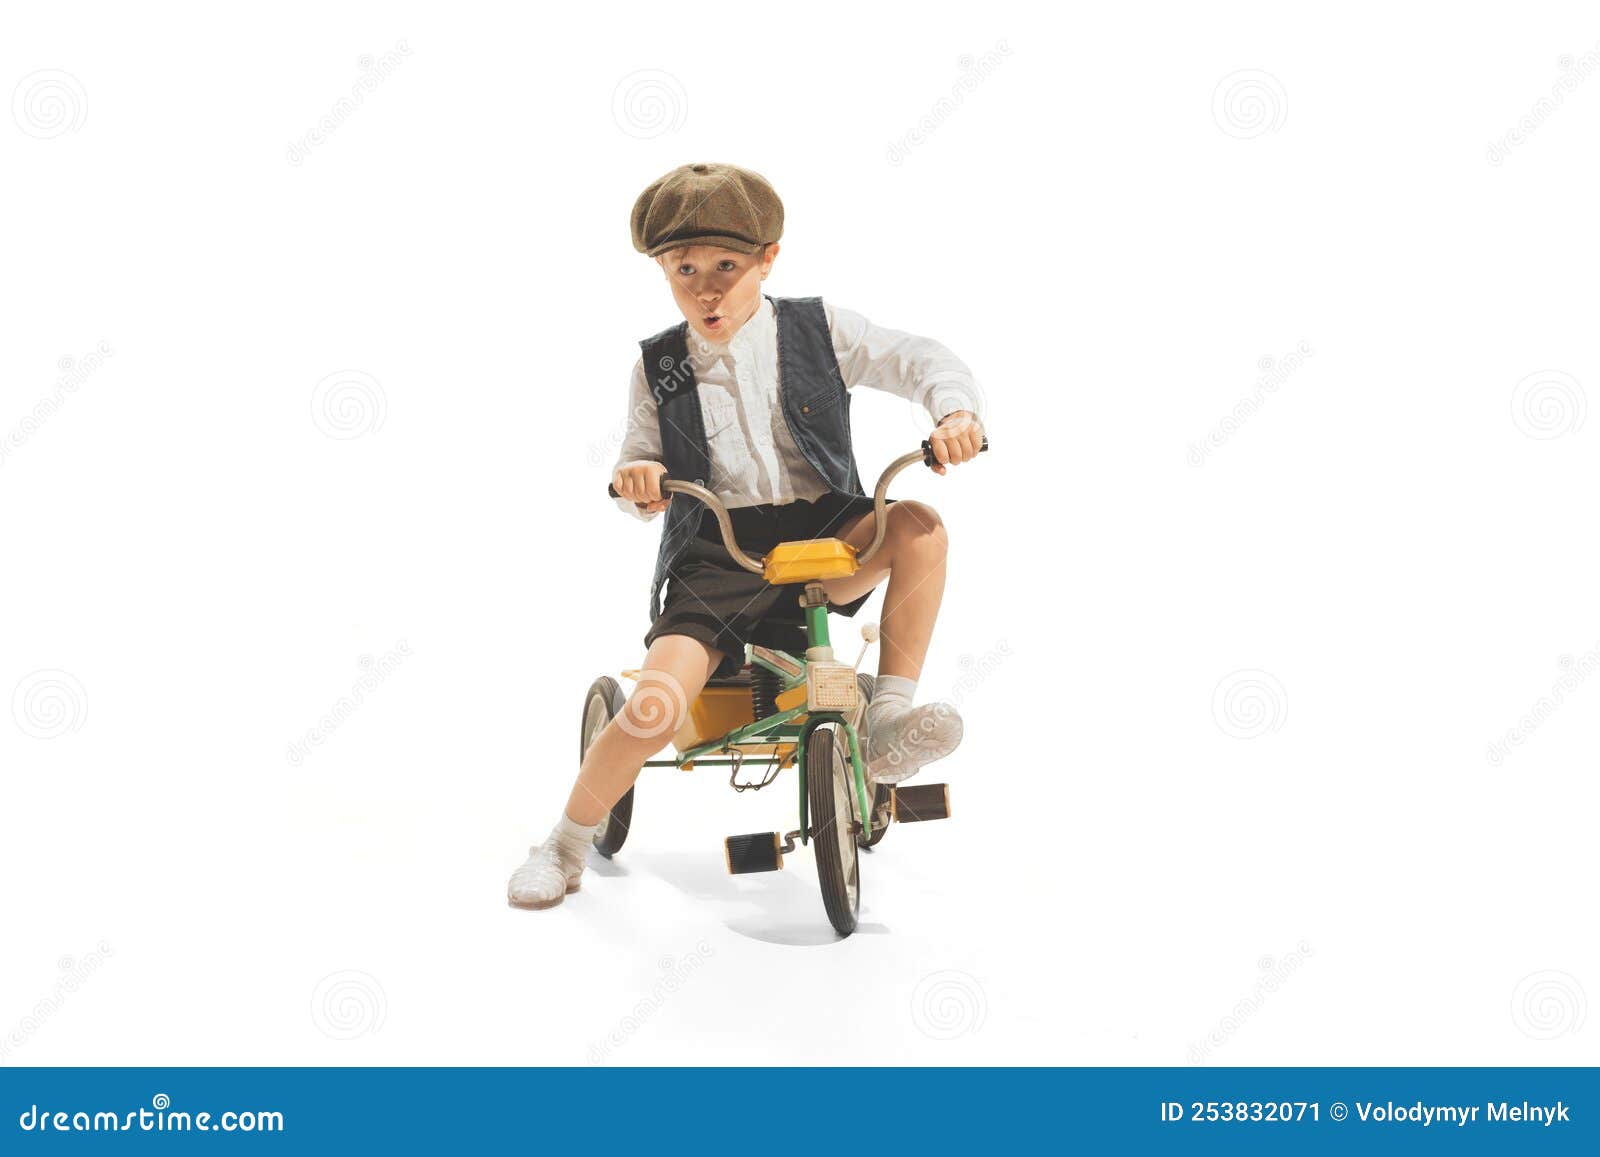 Retrato De Niño En Traje Vintage Jugando Paseando Bicicleta Pequeña Aislado Fondo Blanco Imagen de archivo - sonrisa, escuela: 253832071